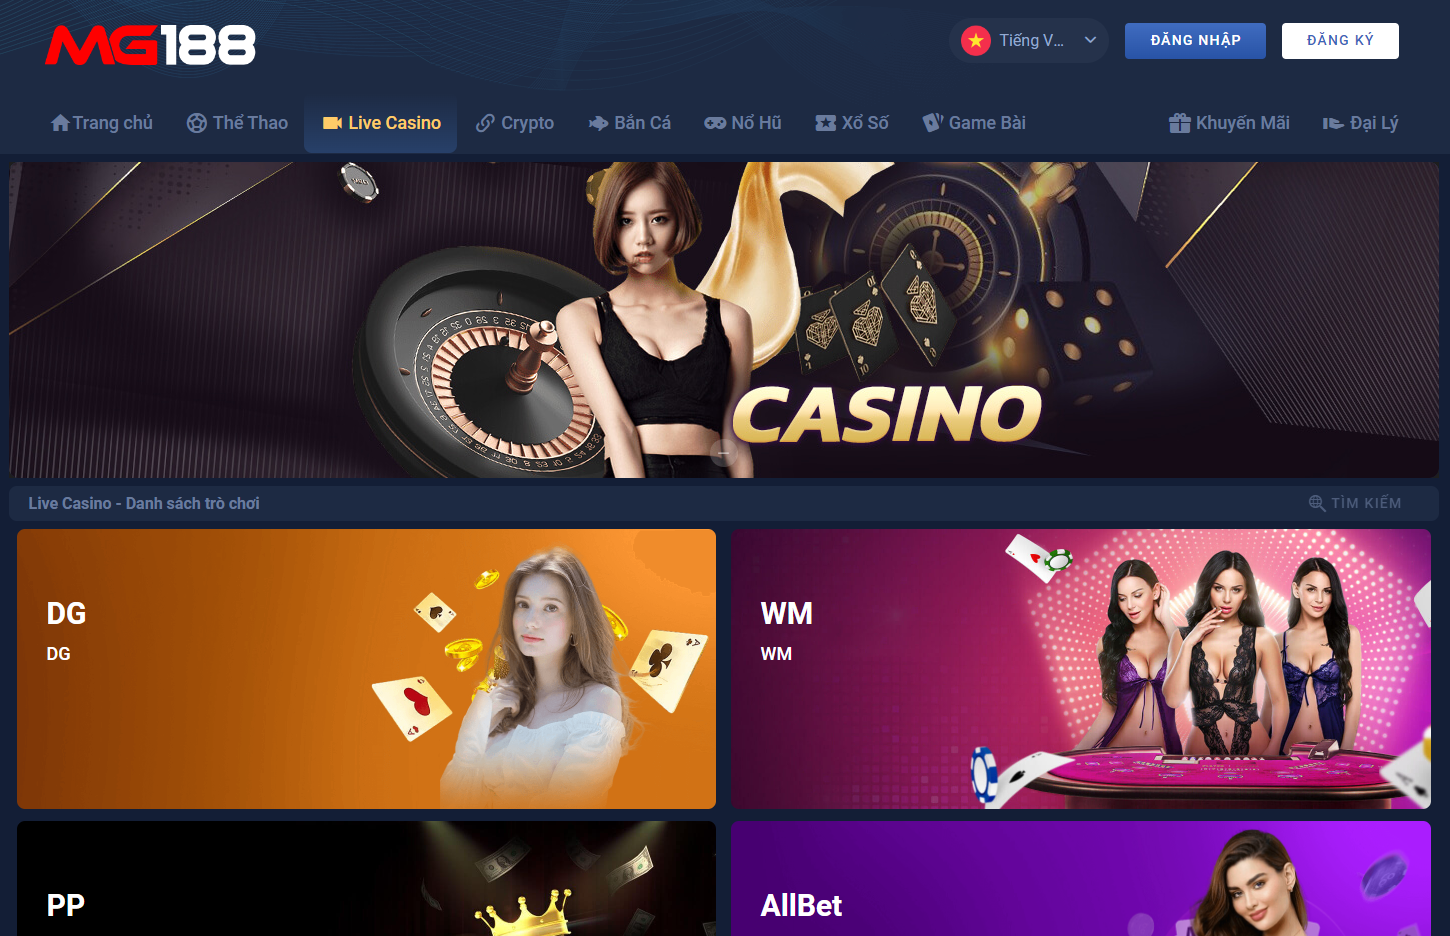 Giới thiệu đôi nét về MG188 casino trực tuyến